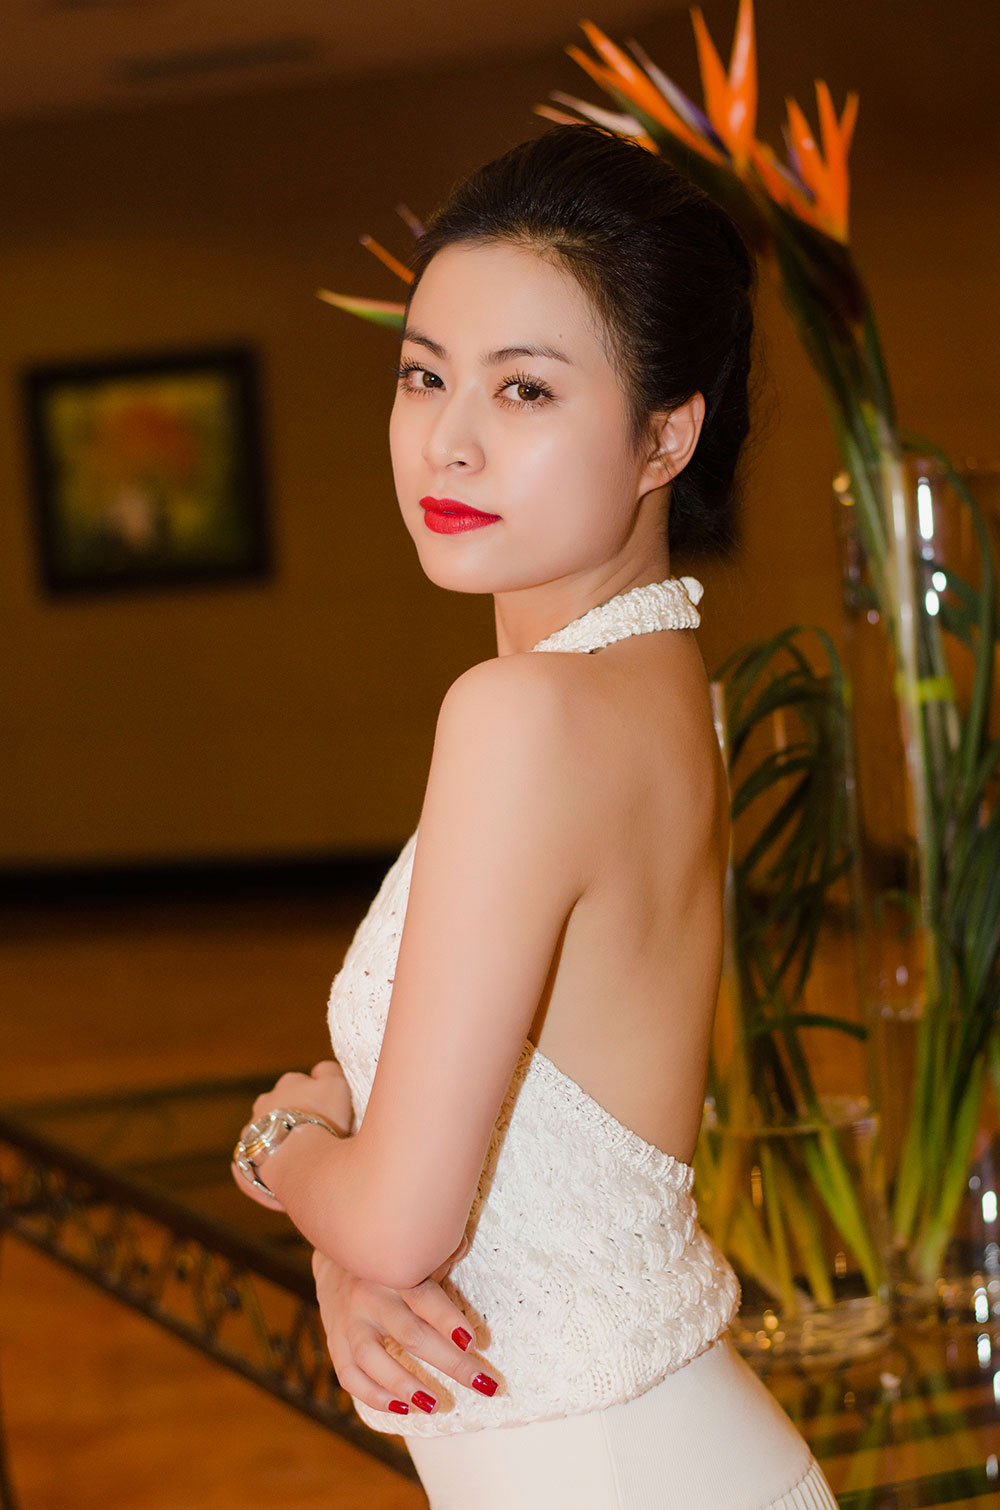 8 mỹ nhân khiêm tốn chiều cao, sexy bậc nhất showbiz Việt 